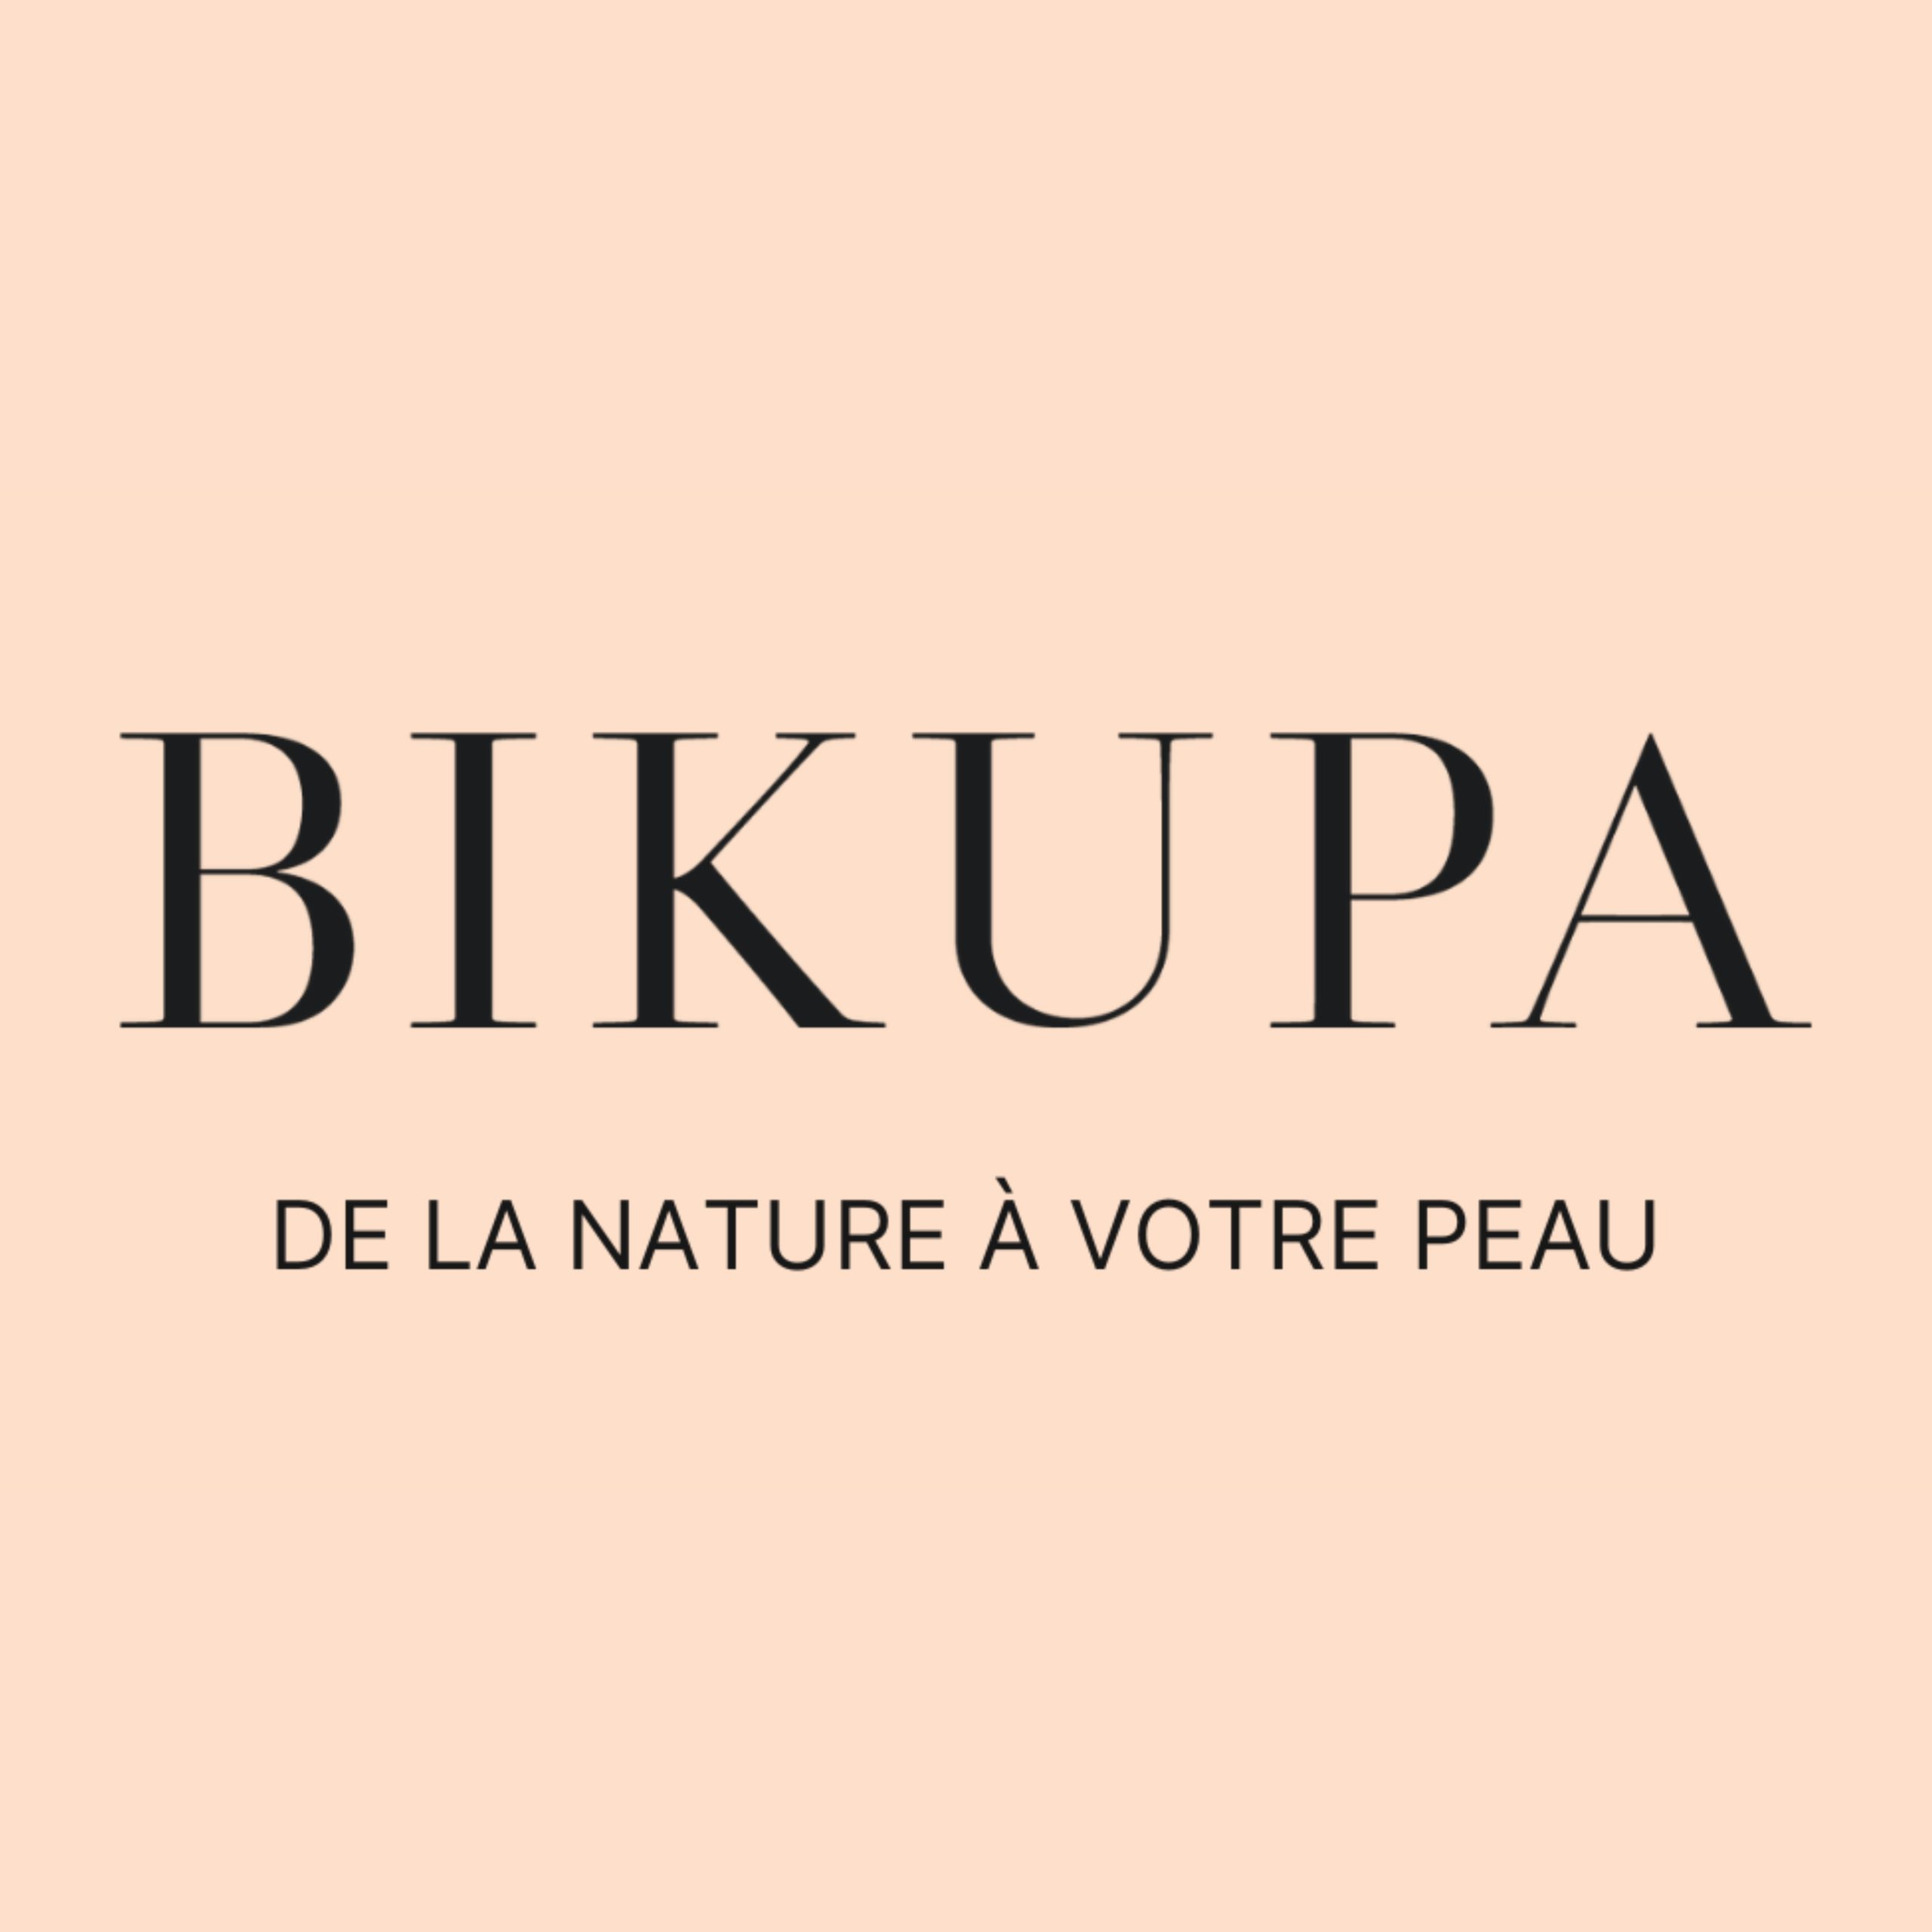 Bikupa Logo marque cosmétiques